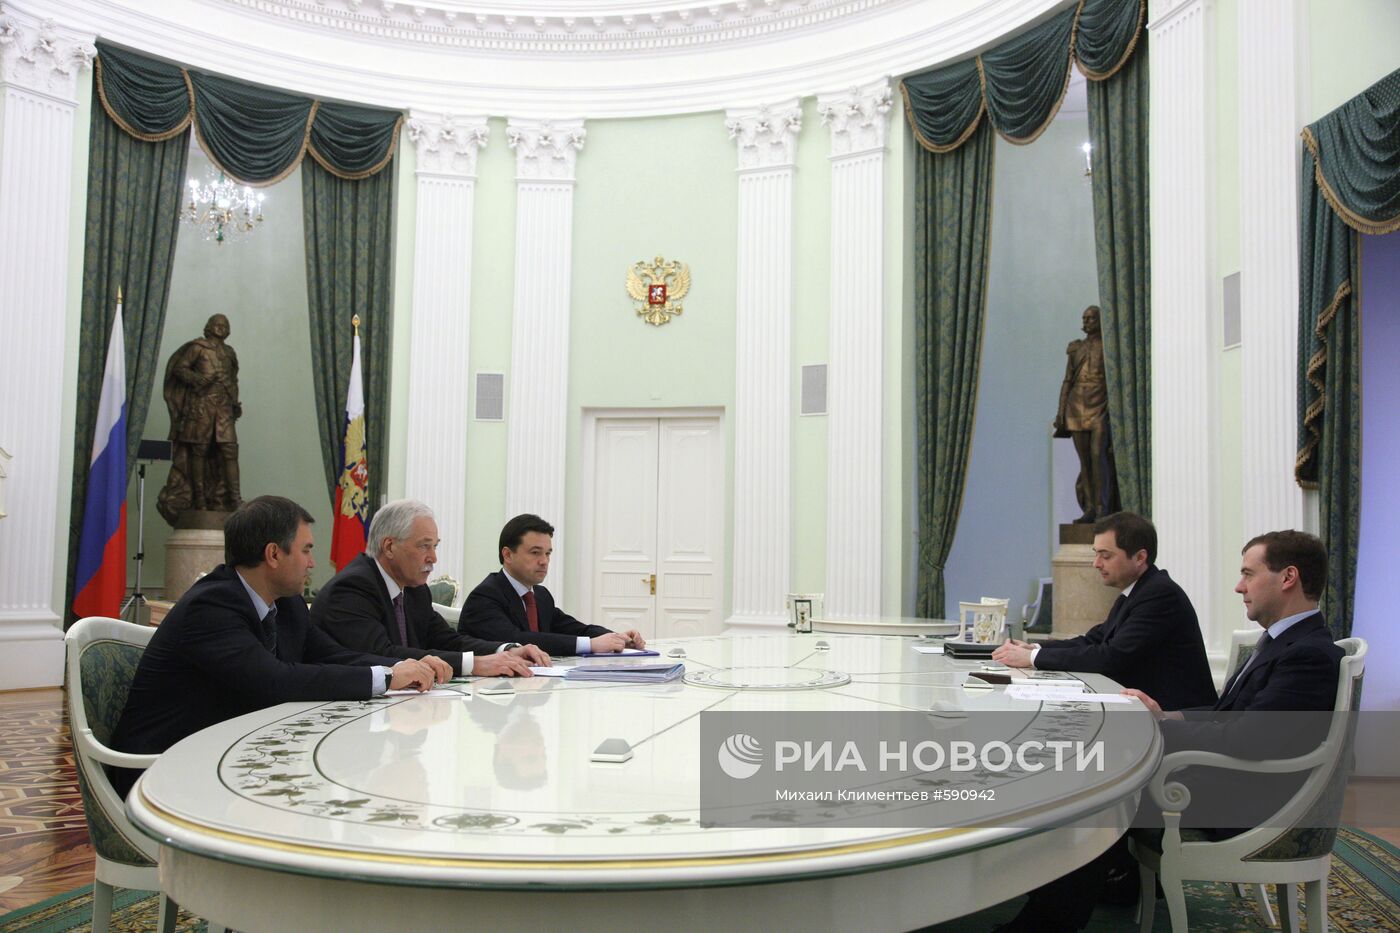 Встреча Дмитрия Медведева с руководством партии "Единая Россия"